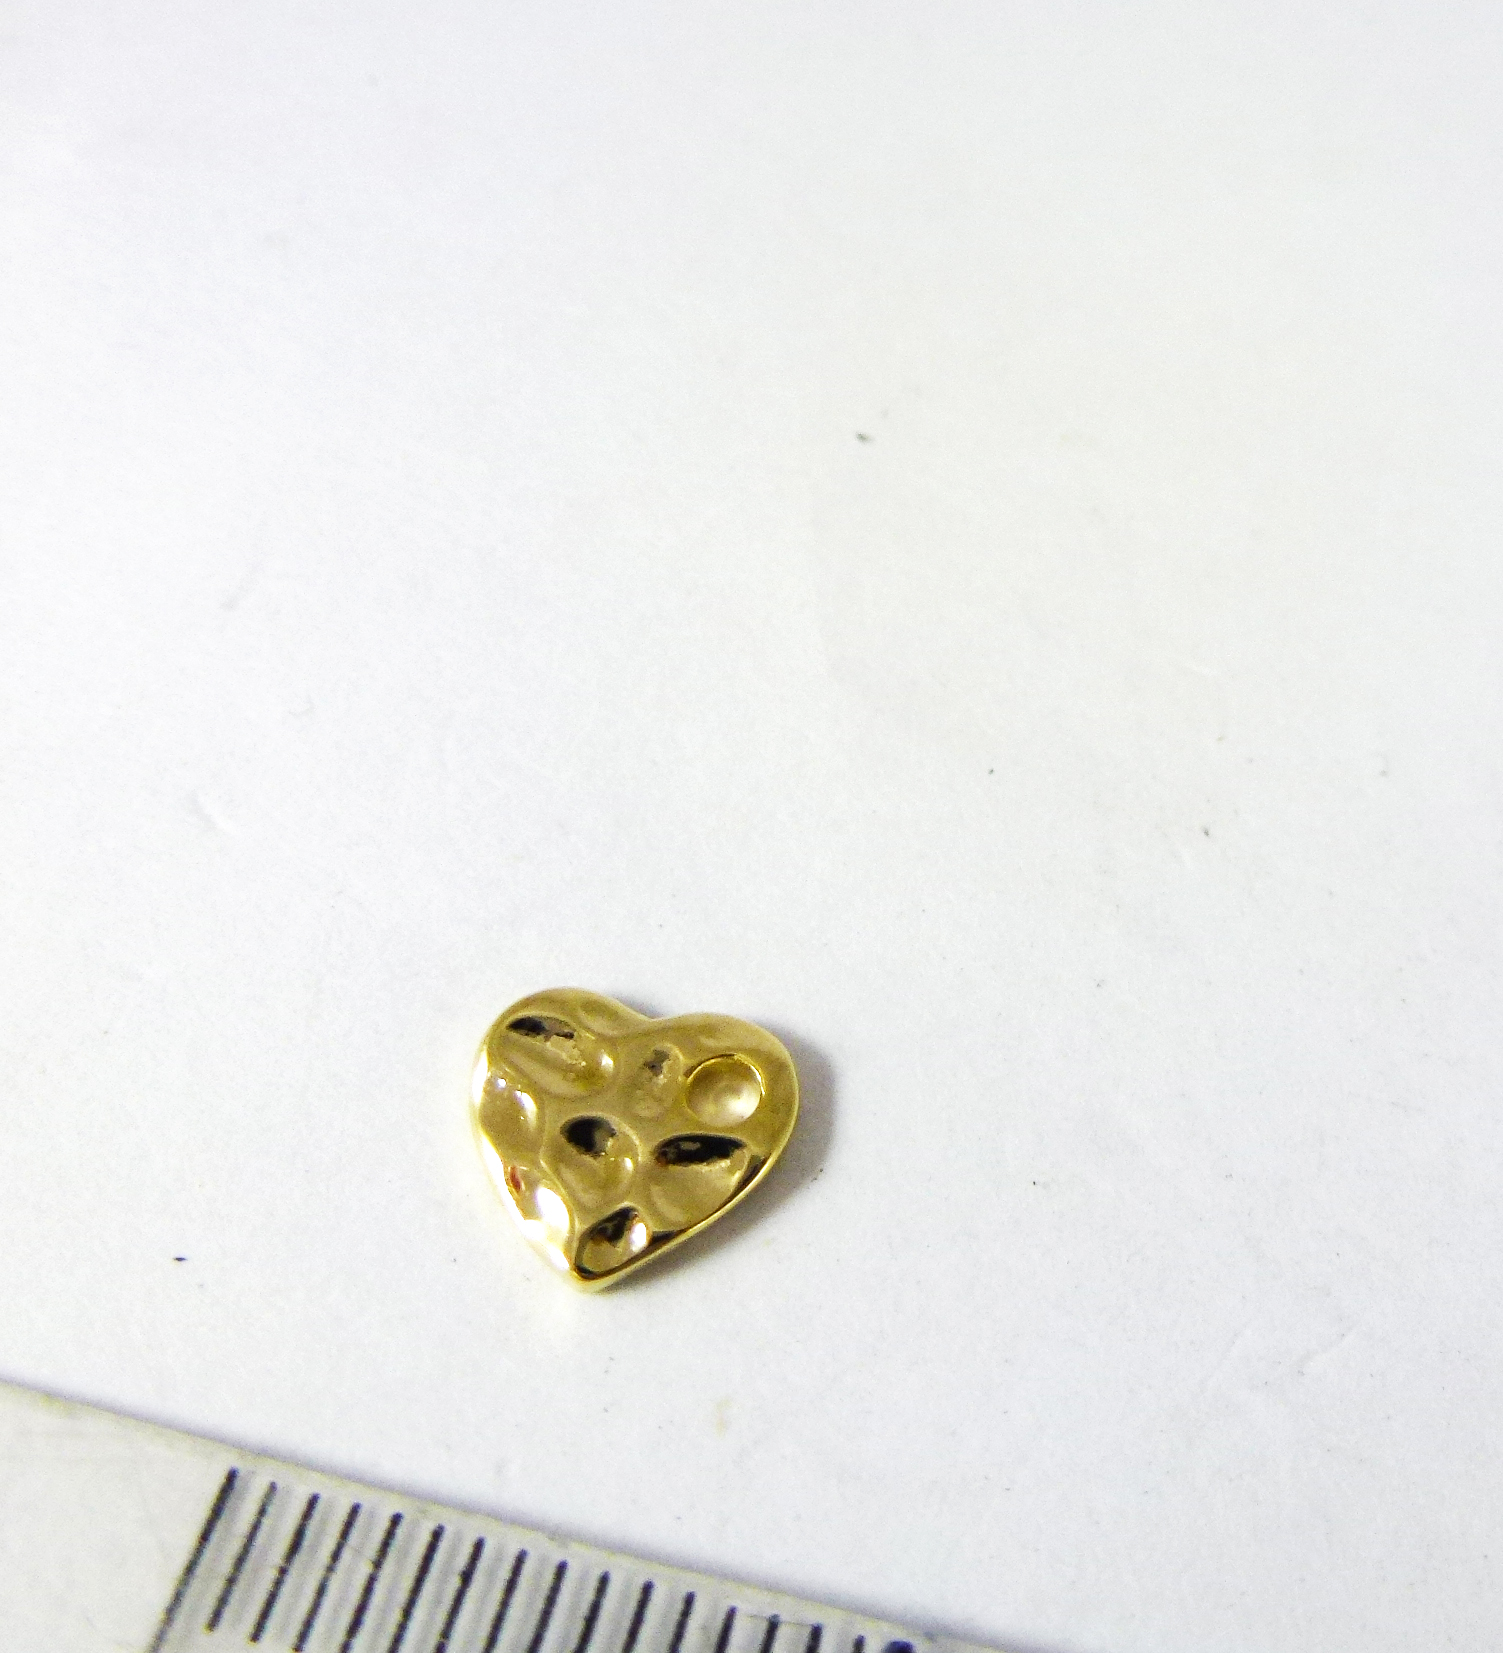 8mm銅鍍金側孔心形片